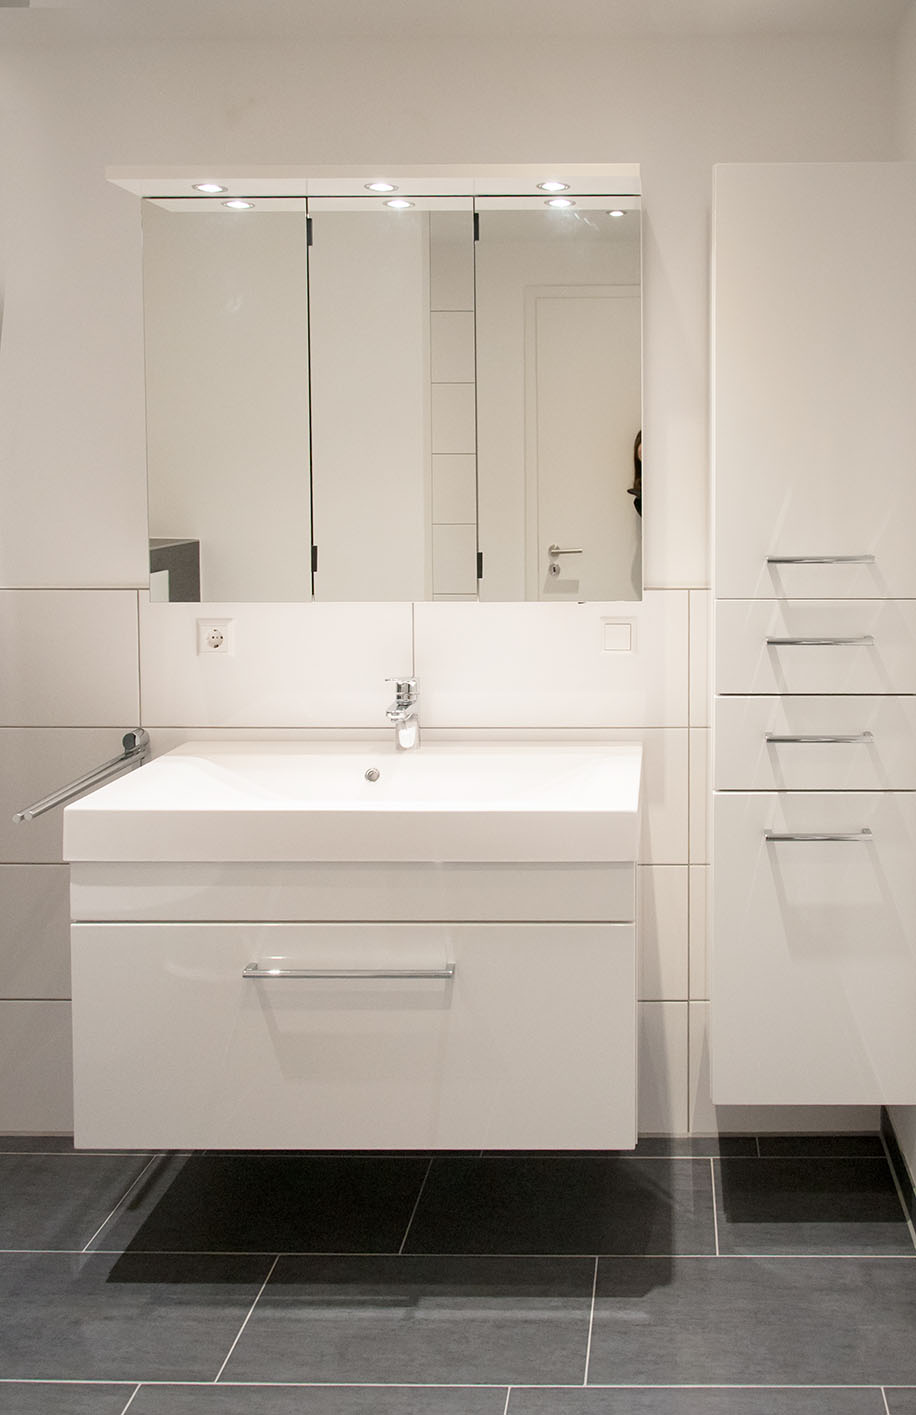 Badezimmer in einer modernen Wohnung | Innenarchitektur